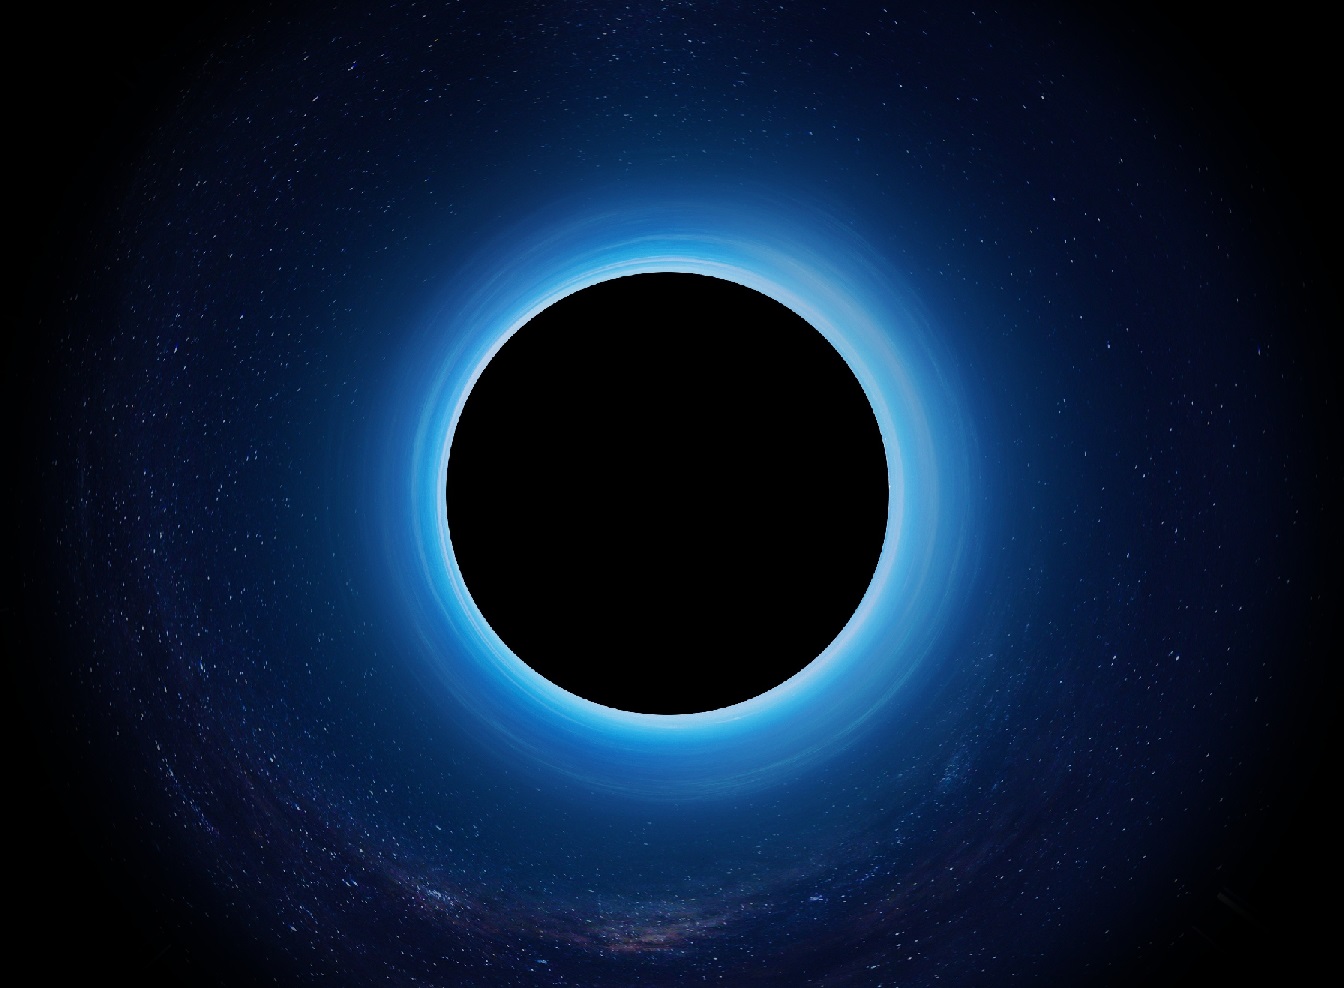 Estrellas de neutrones podrían tener pequeños agujeros negros devorándolas desde adentro